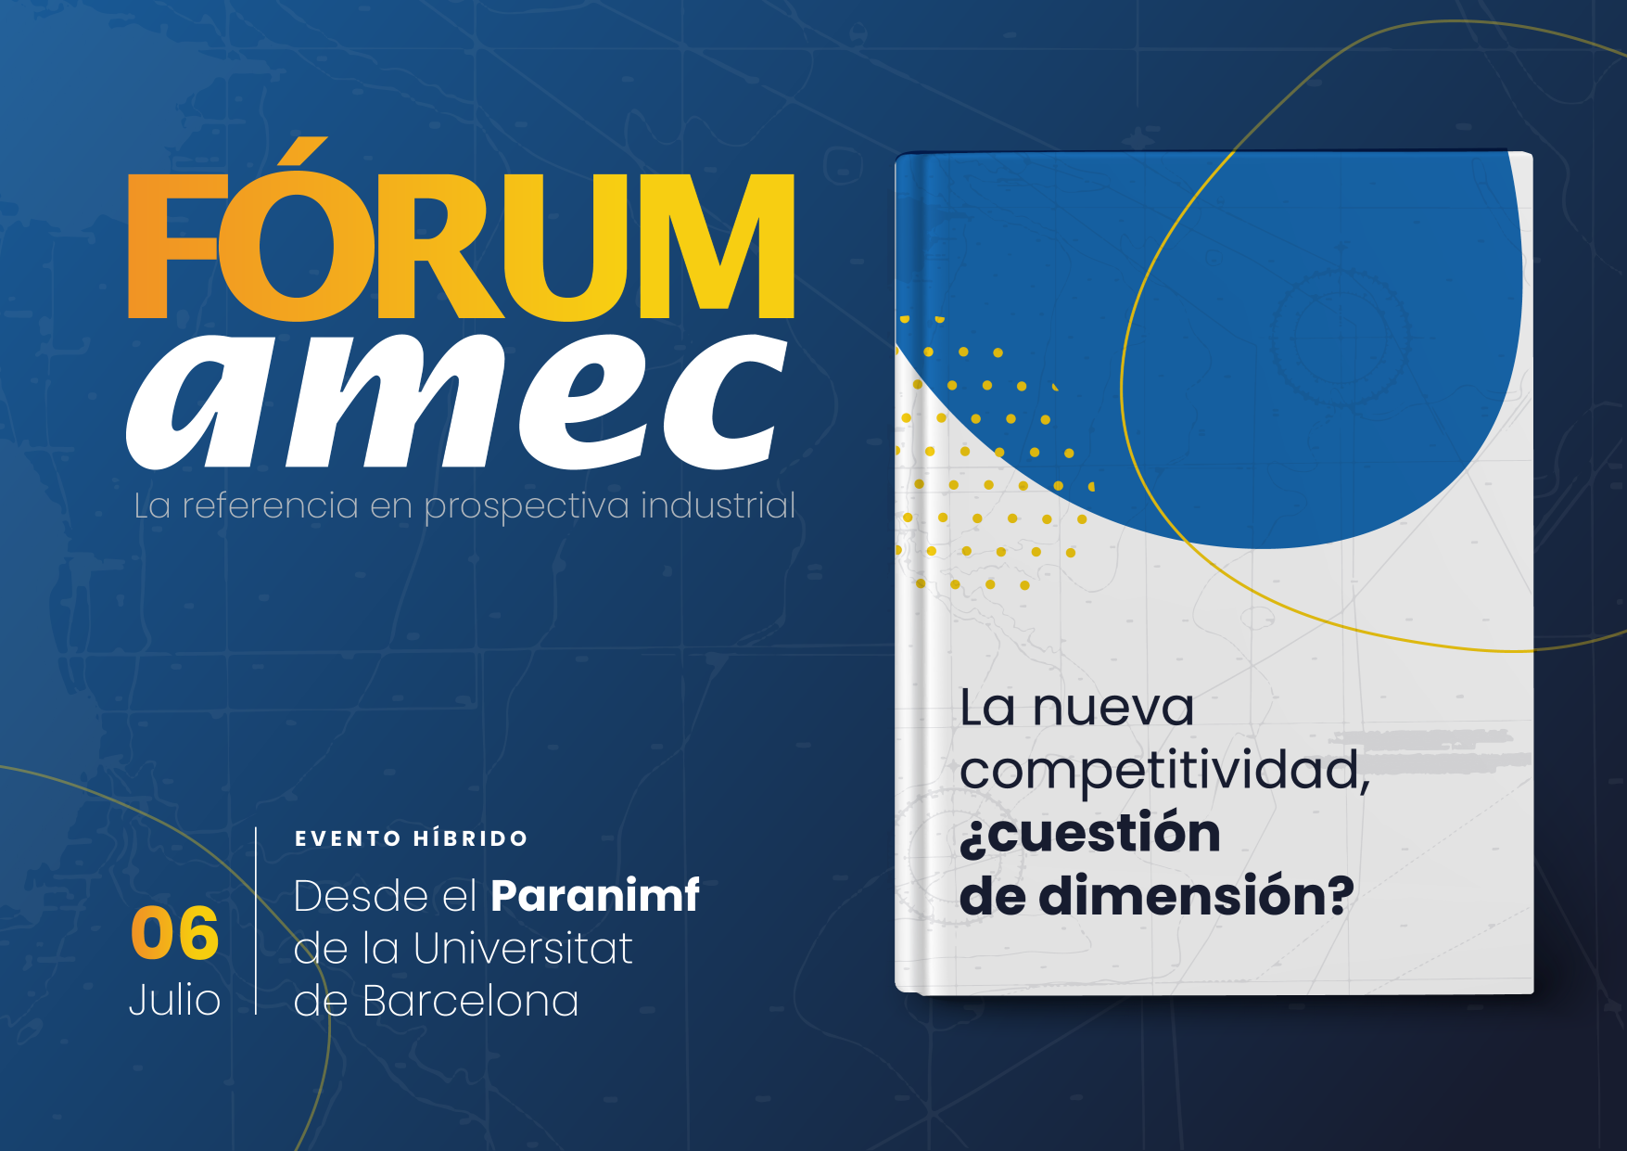 Forum amec 2021 - La dimensión óptima